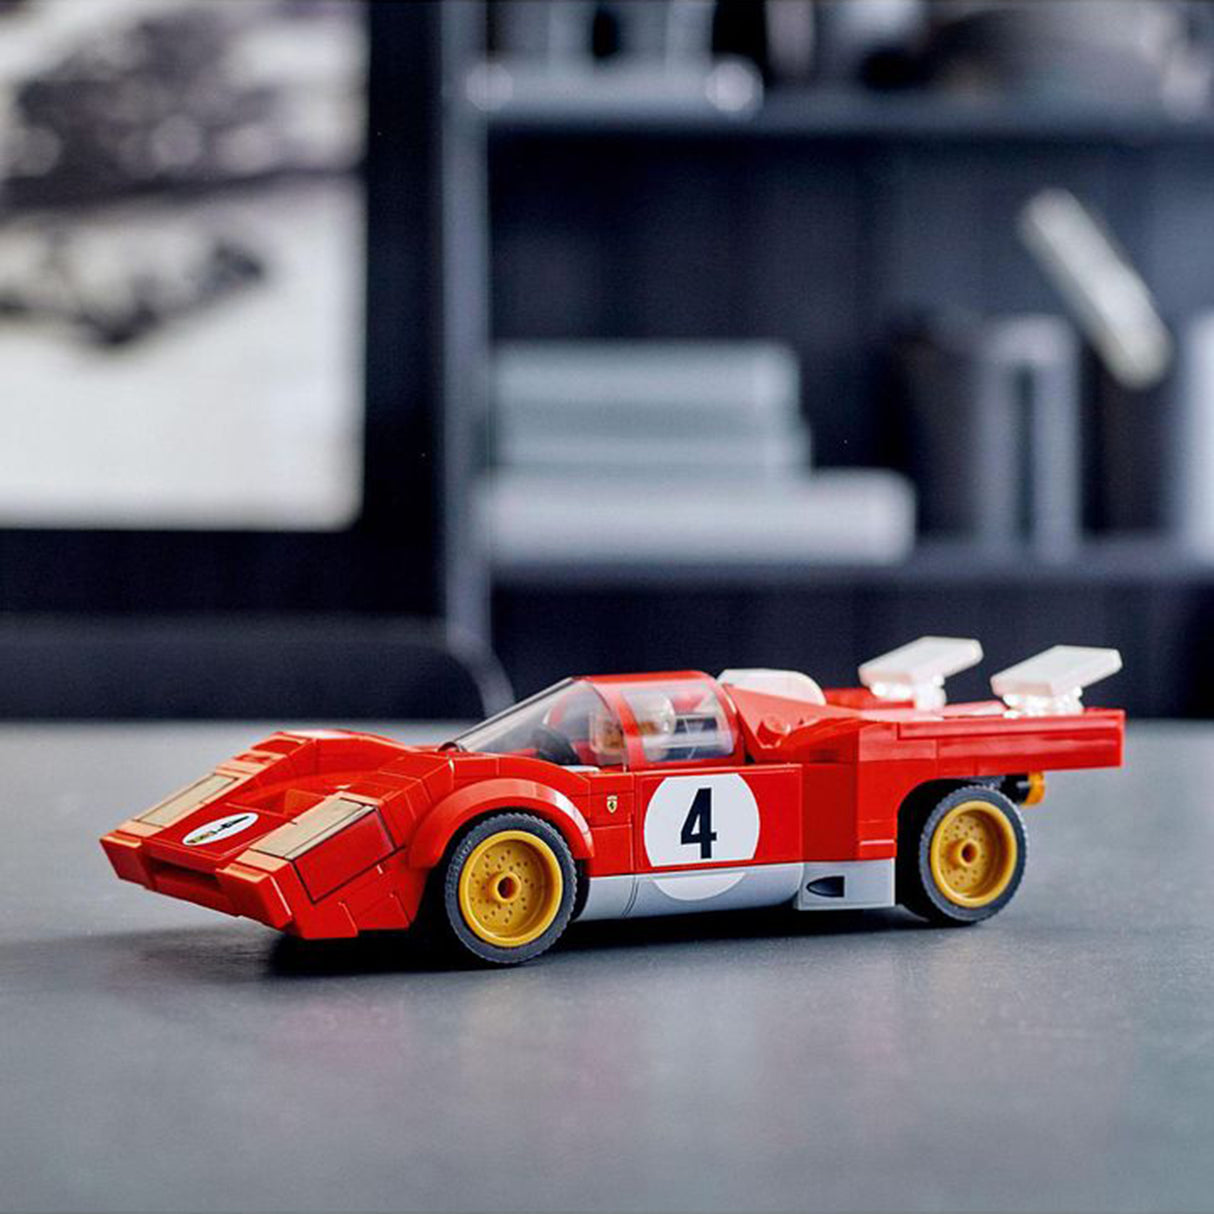 LEGO Speed Champions 1970 Ferrari 512 M 76906 (291 pieces)